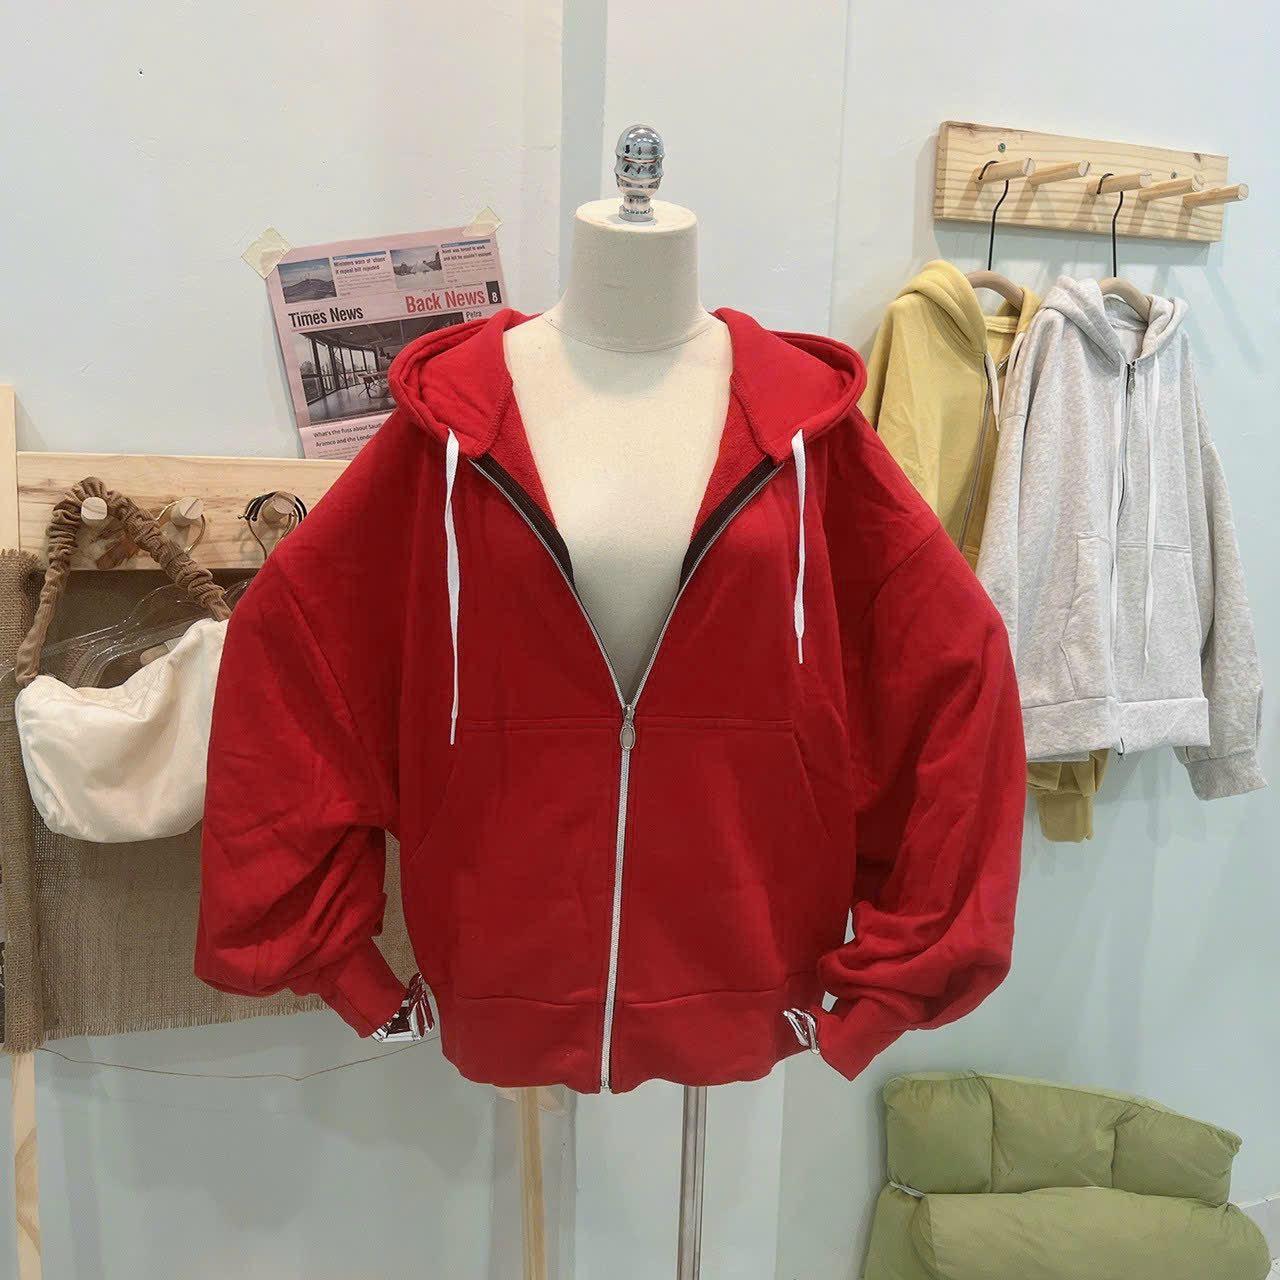 [FREESHIP] Áo Khoác Hoodie Nữ Nỉ Form Rộng Cánh Tay Phối THeo Phong Cách Hàn Quốc Chất Vải Siêu Dày Dặn Hàng Hot Trend HTM FASHION - Red